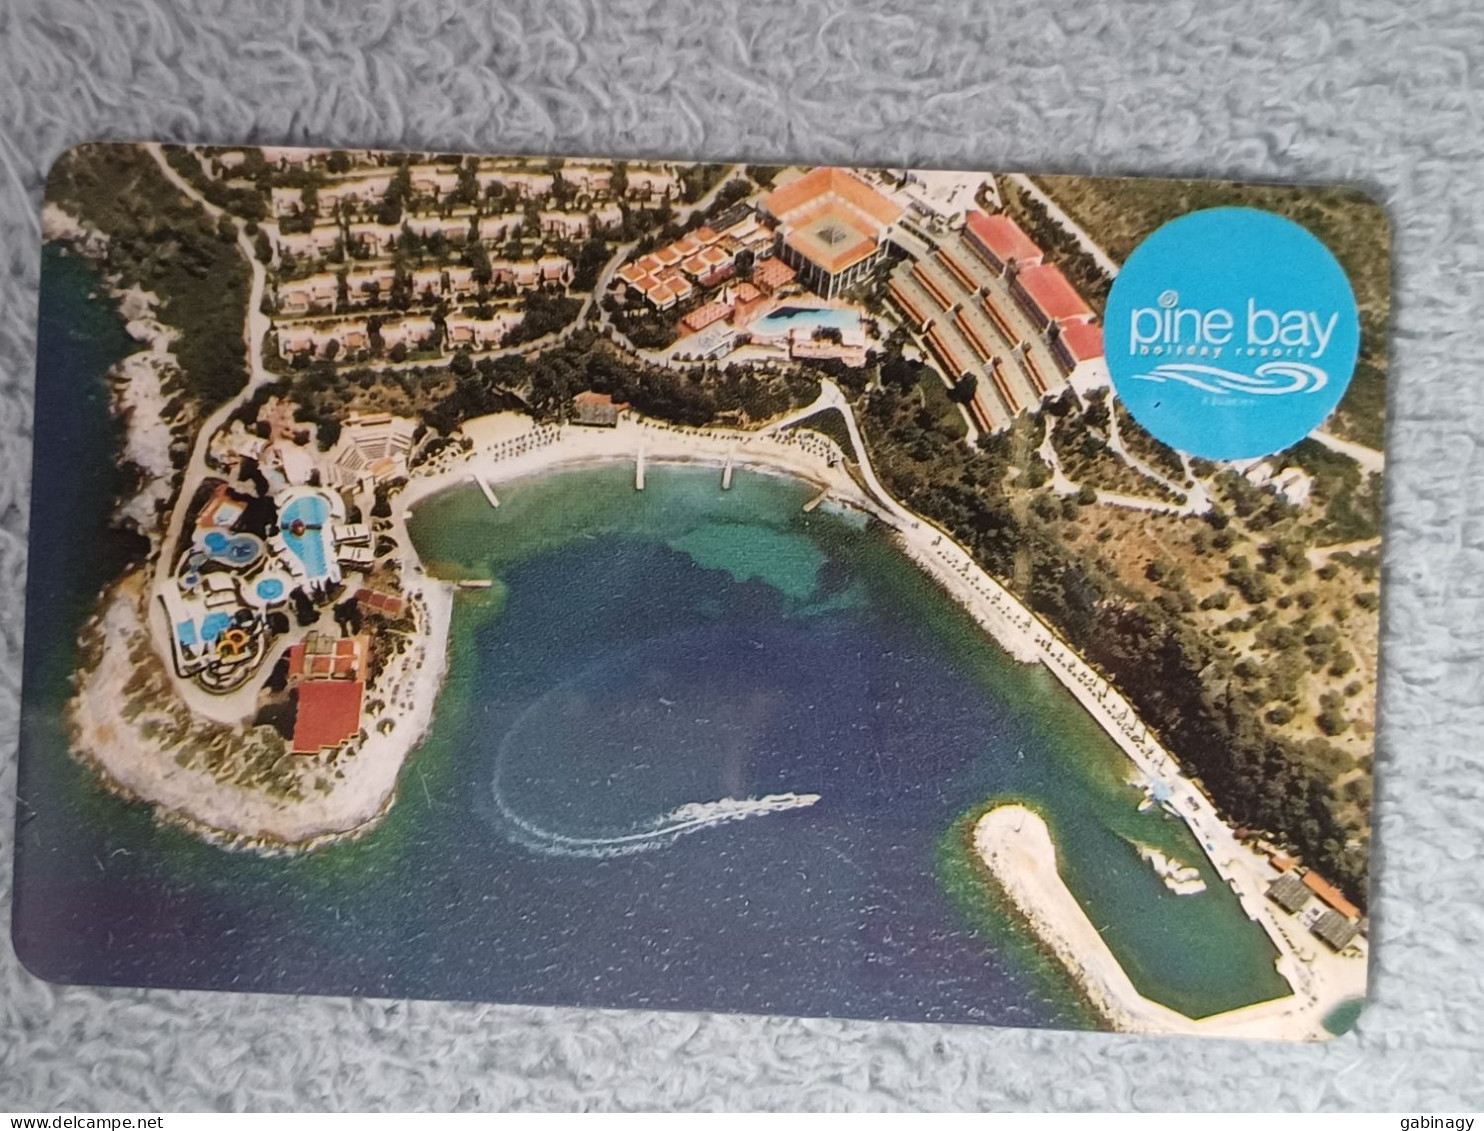 HOTEL KEYS - 2557 - TURKEY - PINE BAY - Hotelsleutels (kaarten)